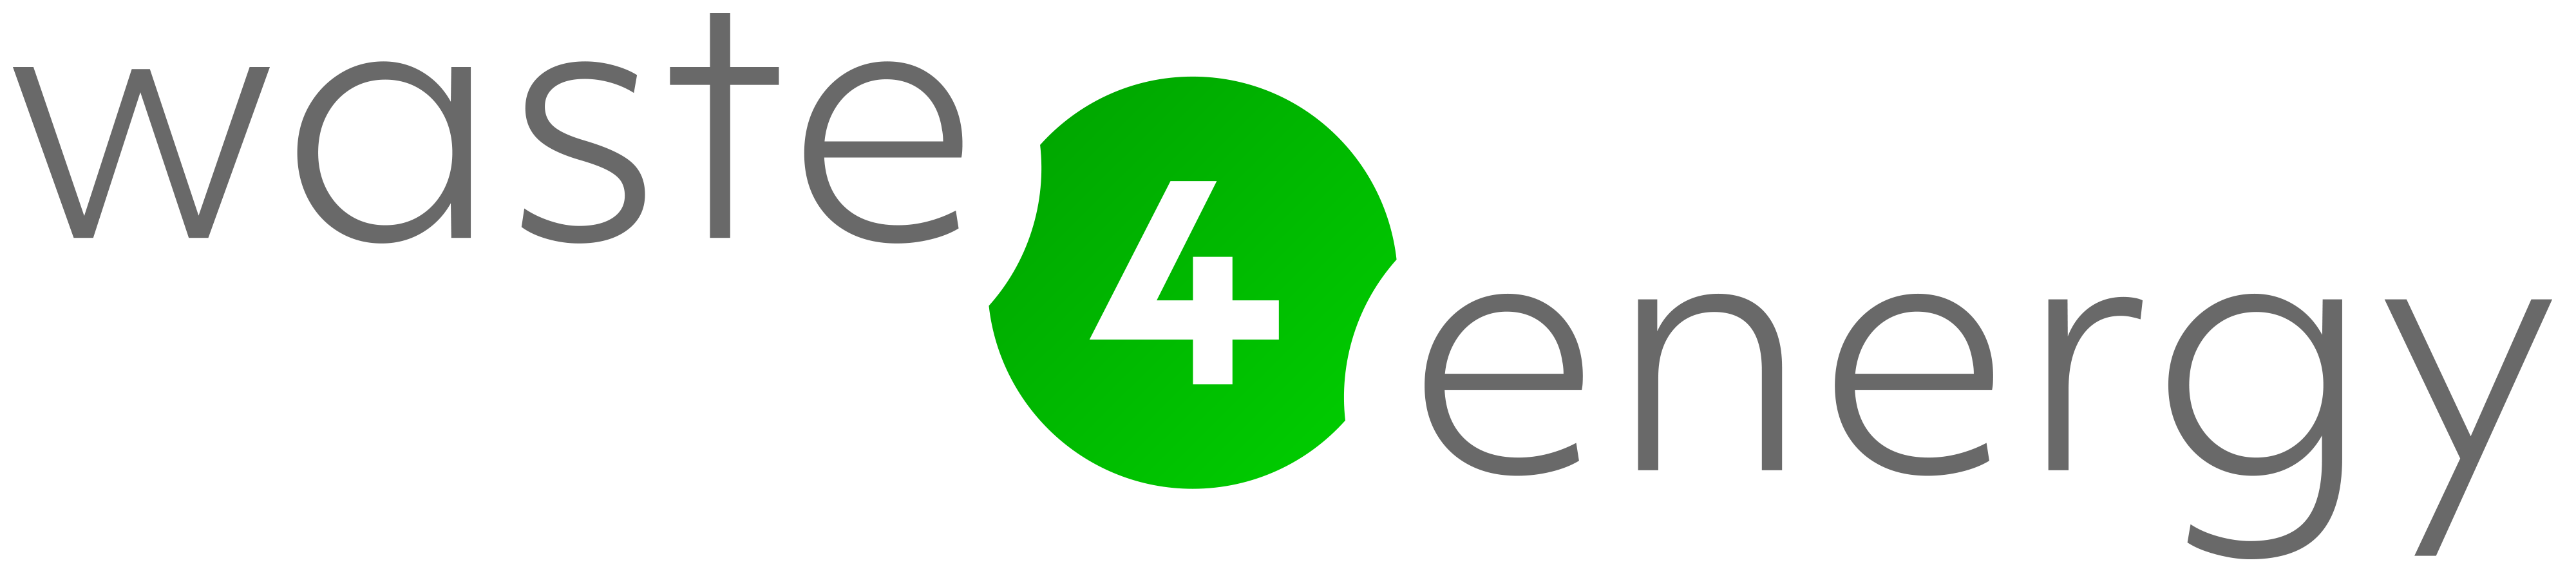 waste 4 Energy logo